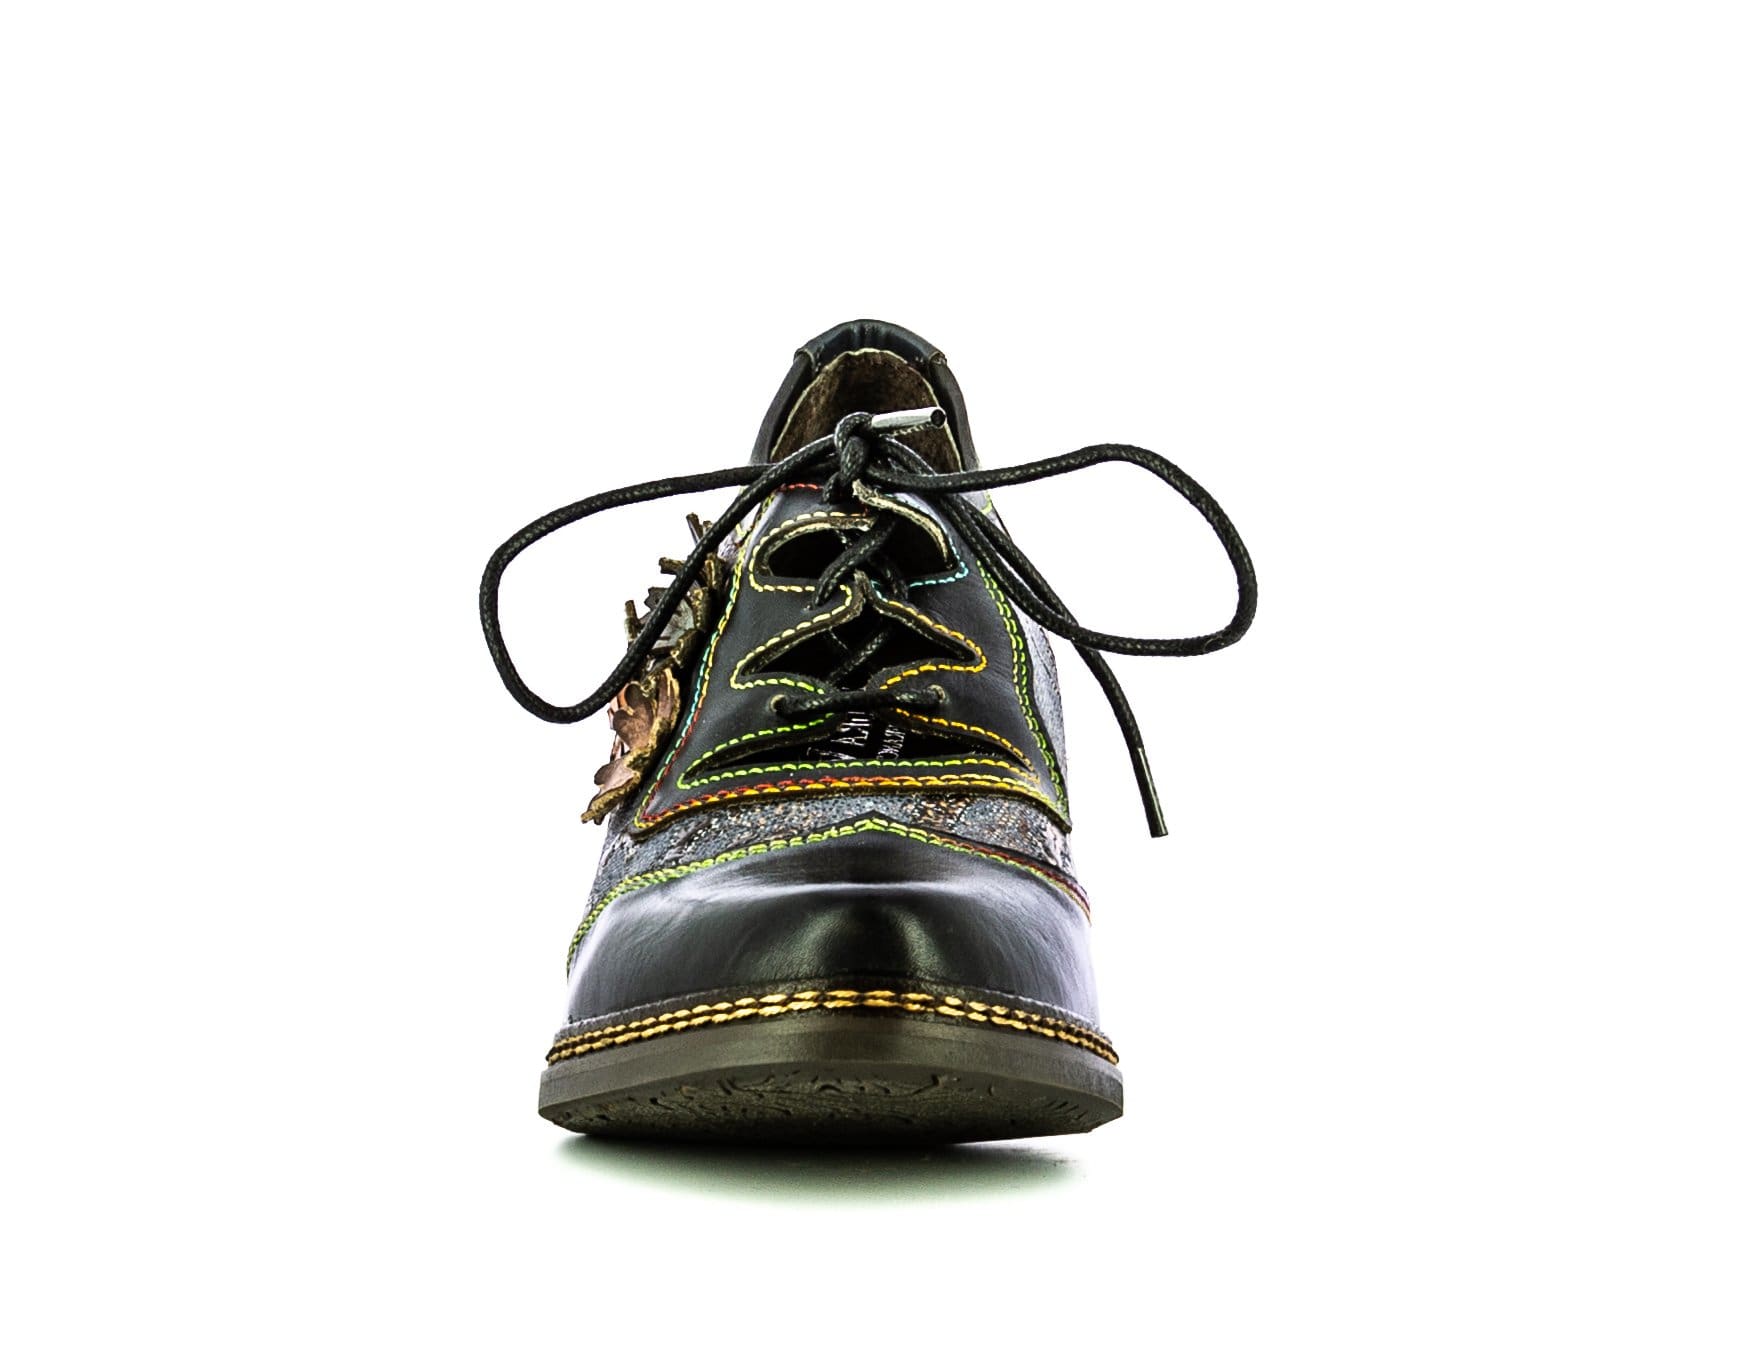 Zapato AGCATHEO 91 - Zapato de salón